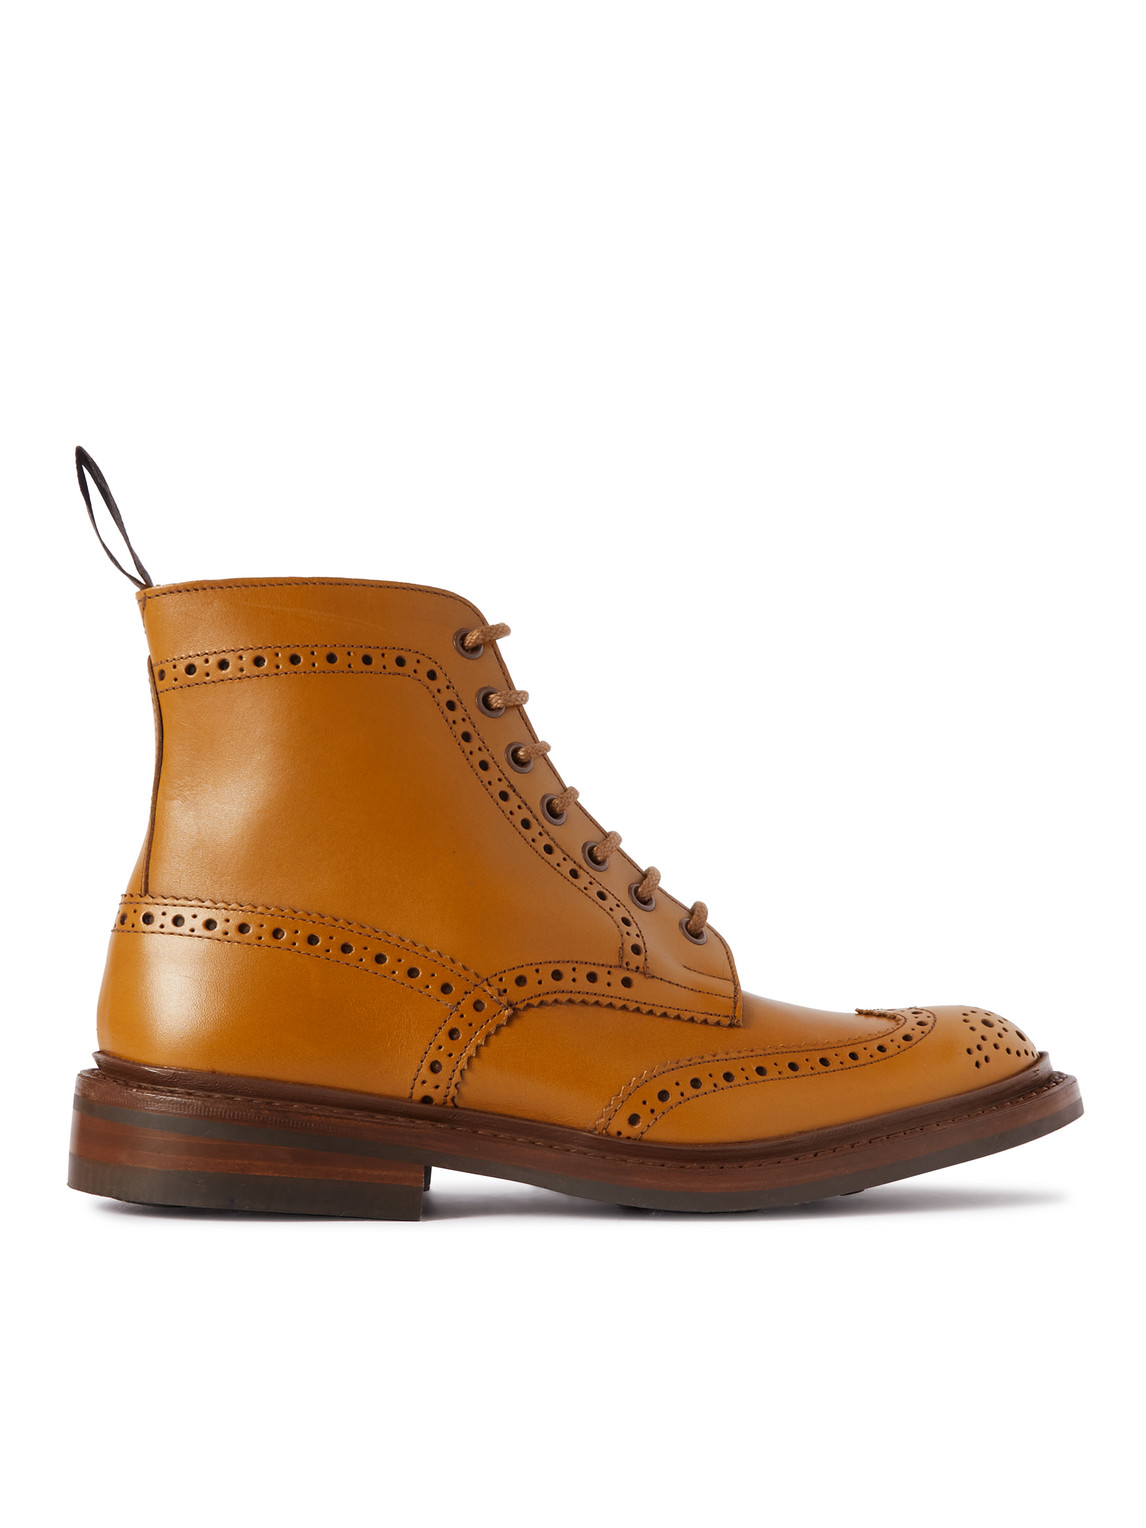 Tricker's - Stow Leather Brogue Boots - Men - Brown - UK 9.5 von Tricker's